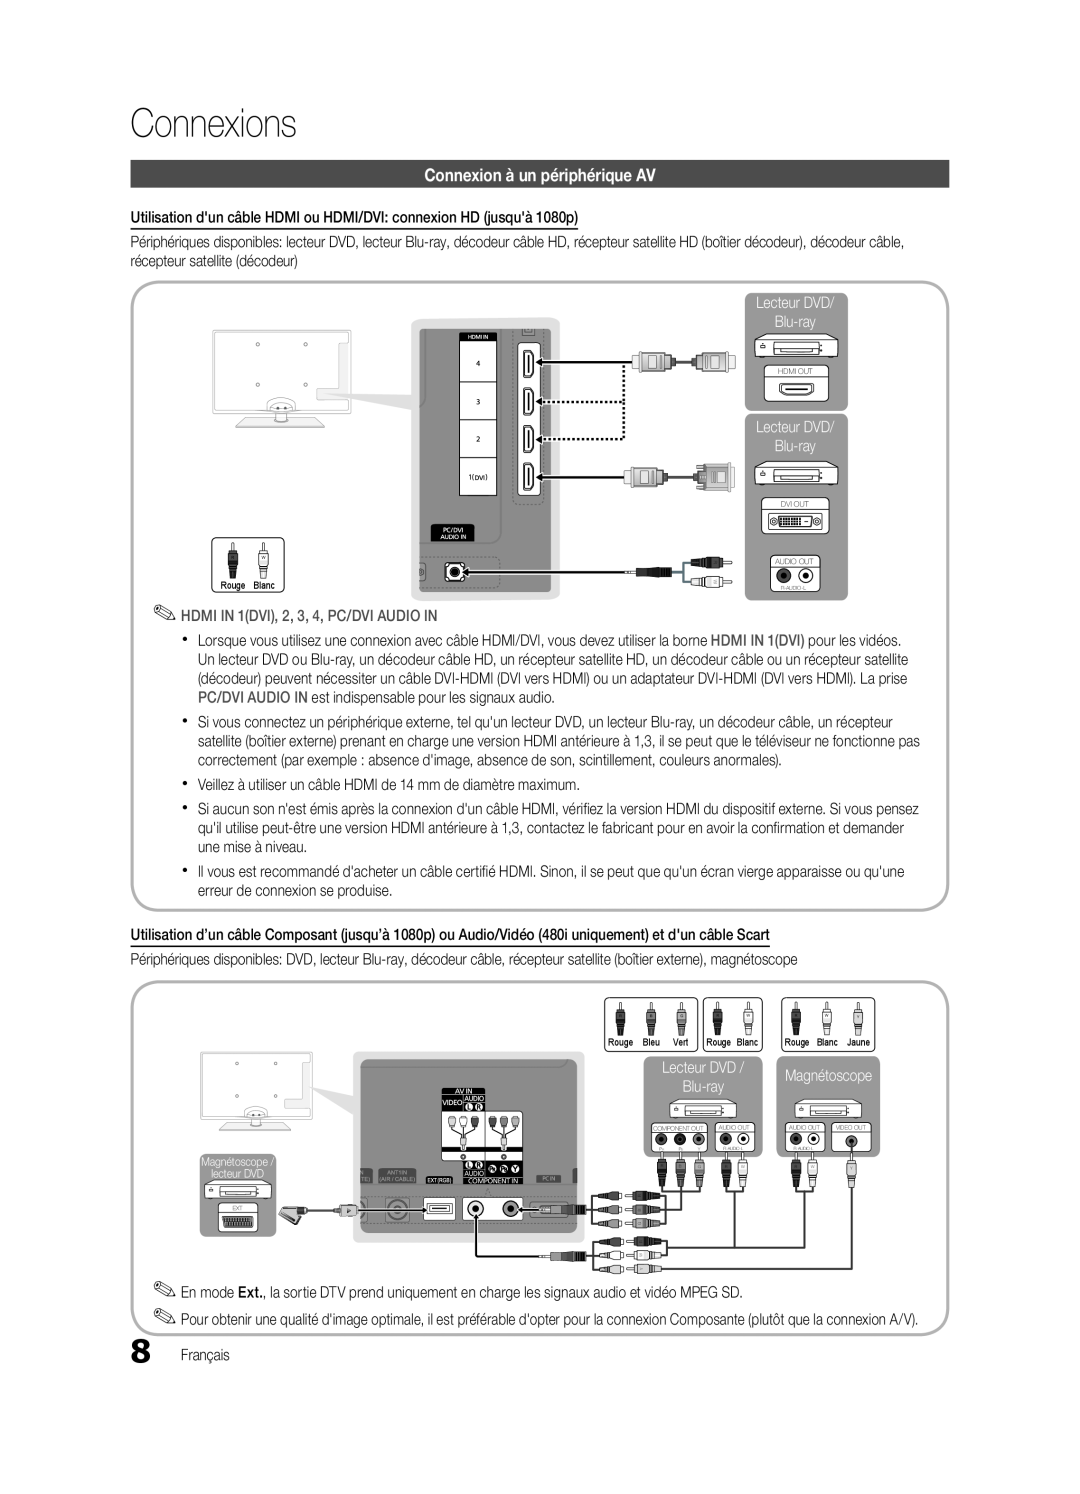 Samsung UE40C5700QSXZG, UE37C5700QSXZG, UE32C5700QSXZG manual Connexions, Connexion à un périphérique AV, Lecteur DVD Blu-ray 